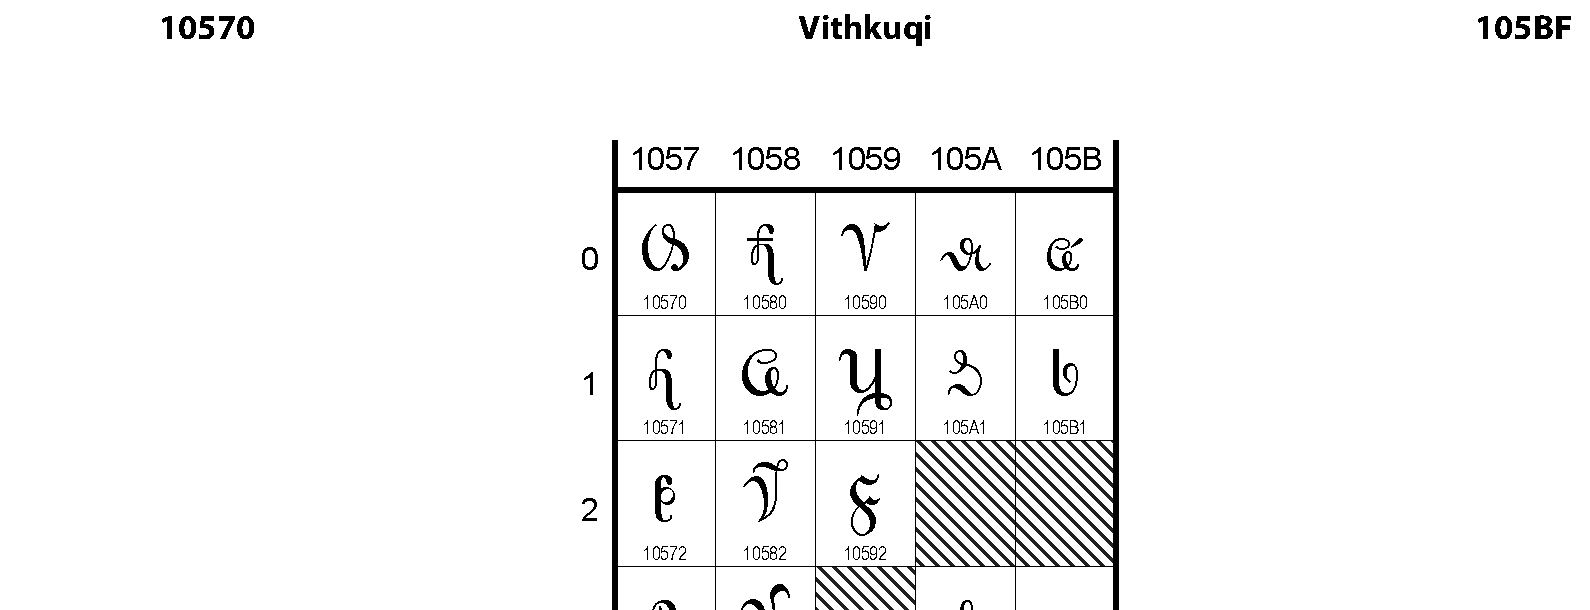 Unicode - Vithkuqi